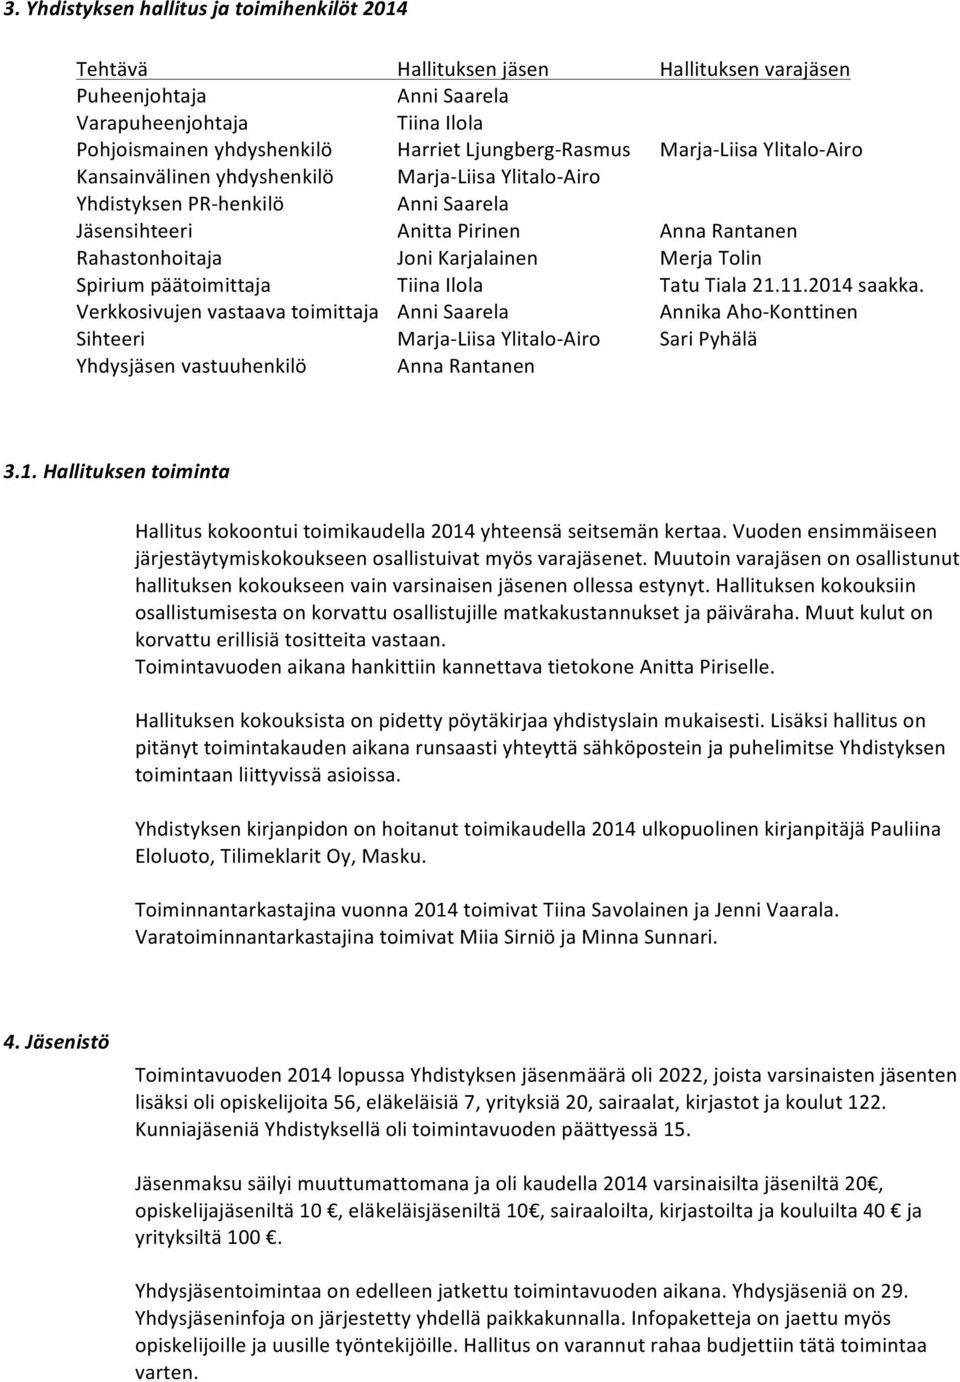 Spiriumpäätoimittaja TiinaIlola TatuTiala21.11.2014saakka.